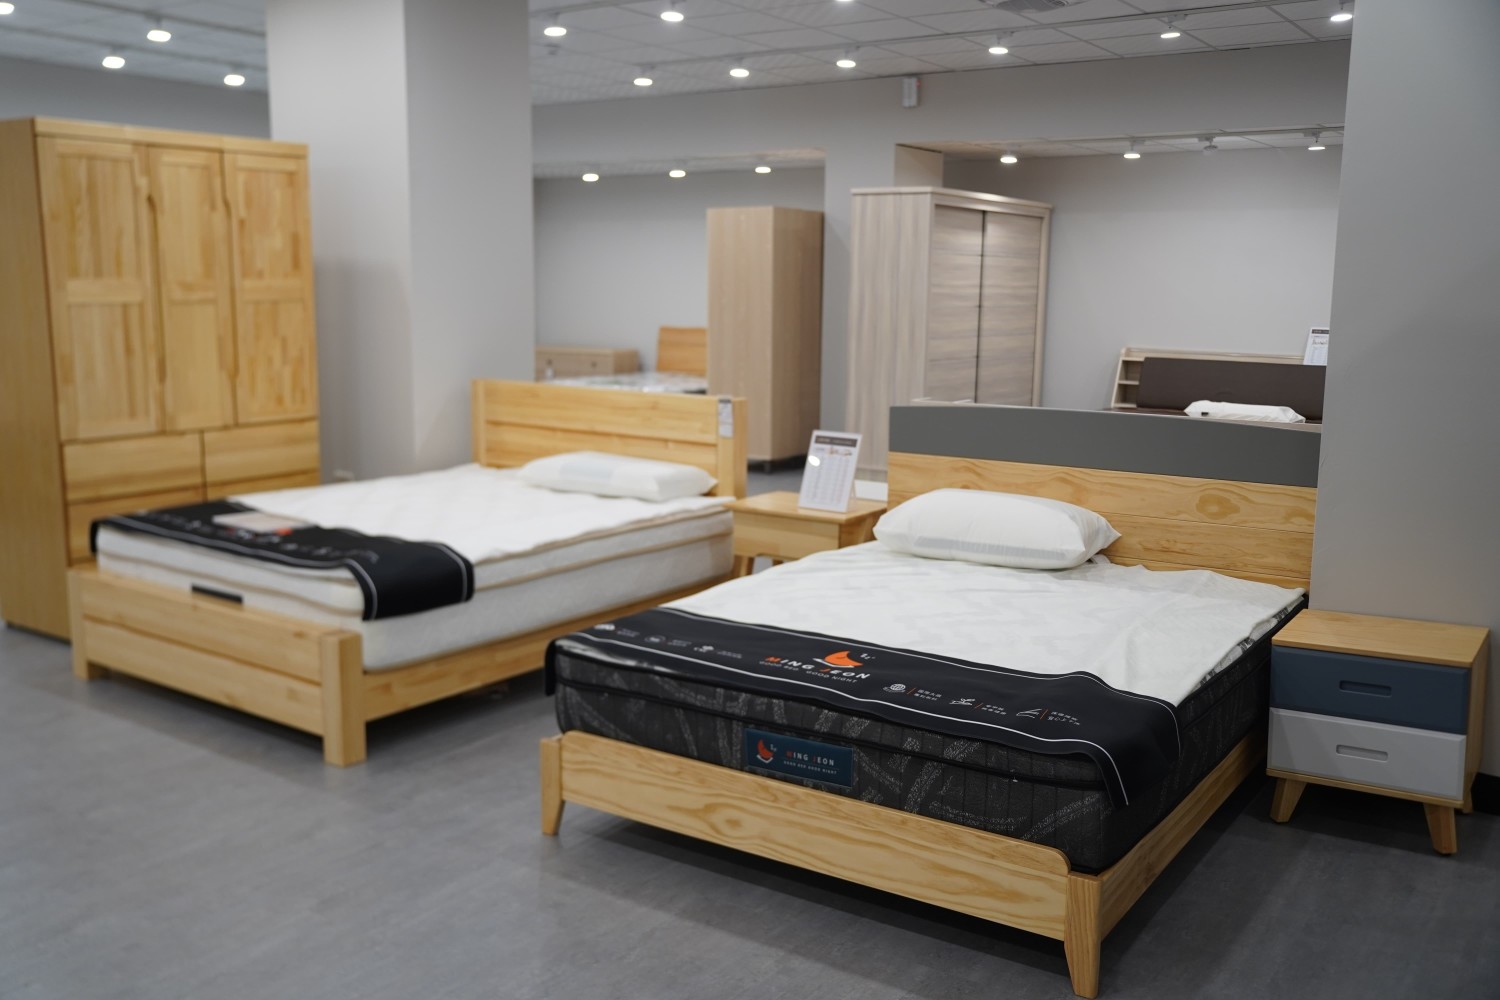 【明久家具台中店】四樓平價床墊及北歐實木風床組體驗區。